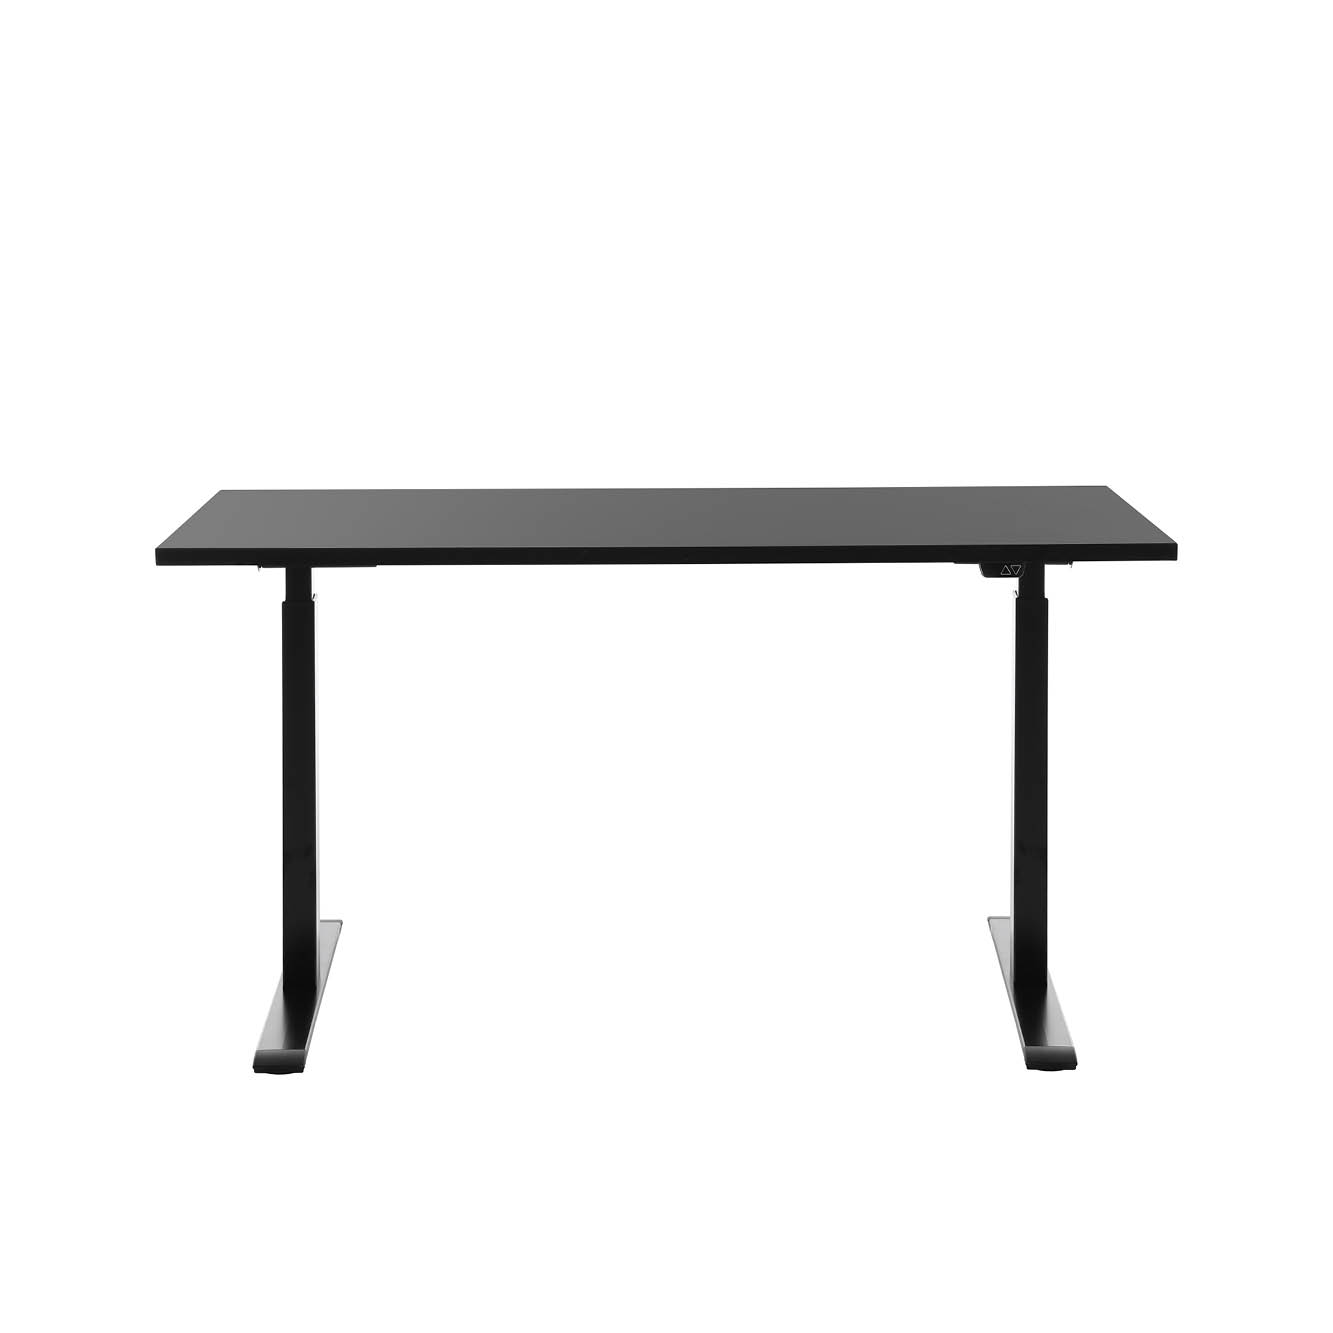 140 x 60 cm Schreibtisch Topstar Ergo E-Table höhenverstellbar - schwarz, schwarz